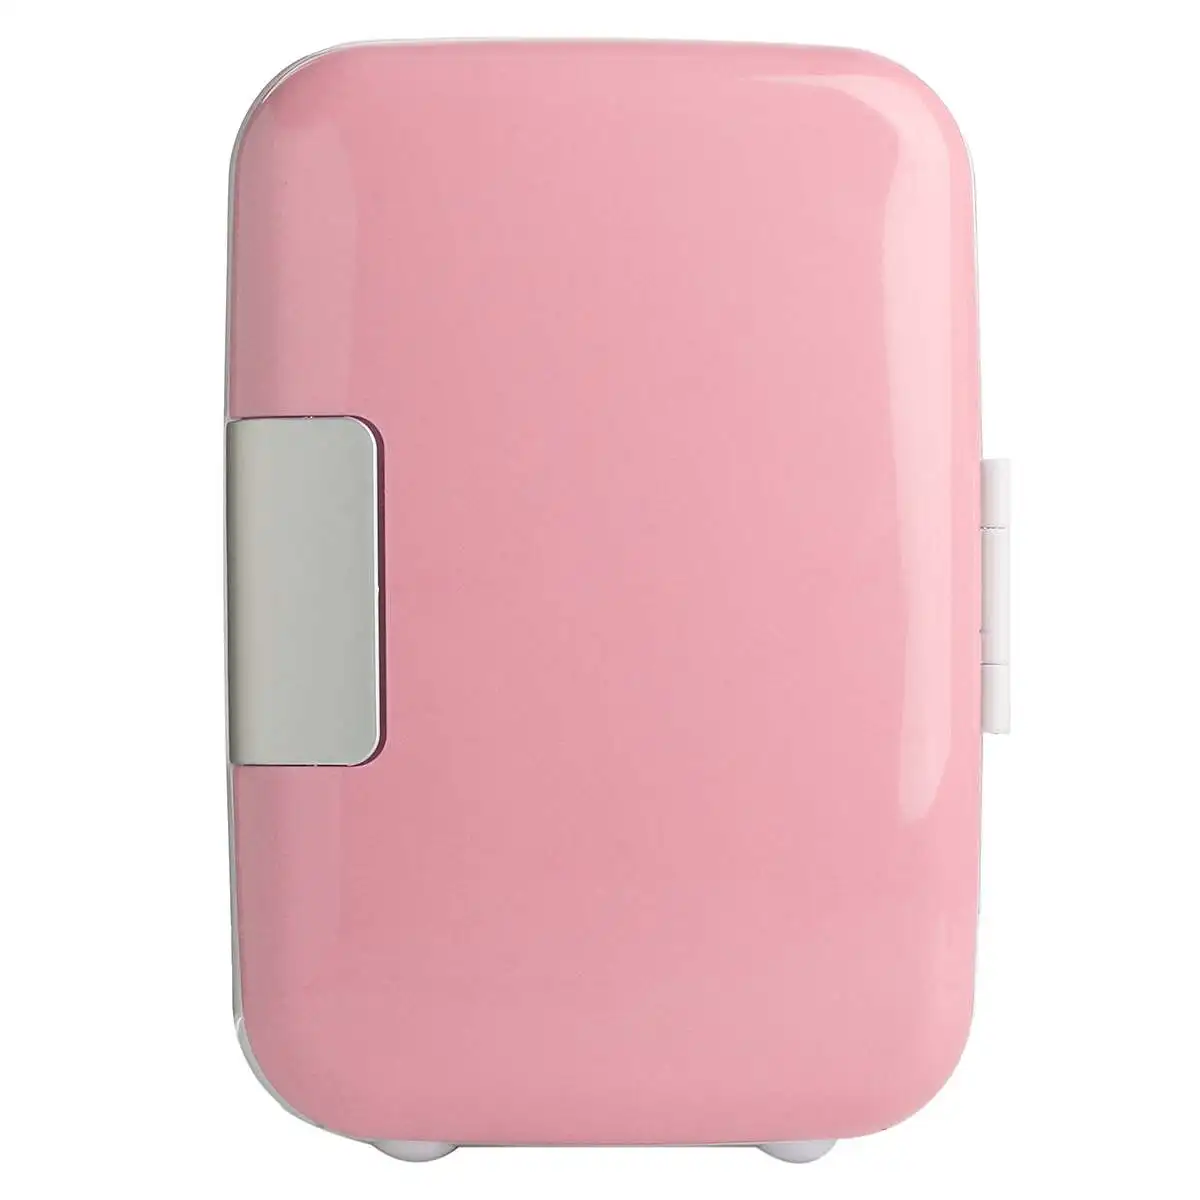 Мини Портативный 4L холодильник морозильник охладитель теплее авто автомобиль наружного использования - Название цвета: Розовый